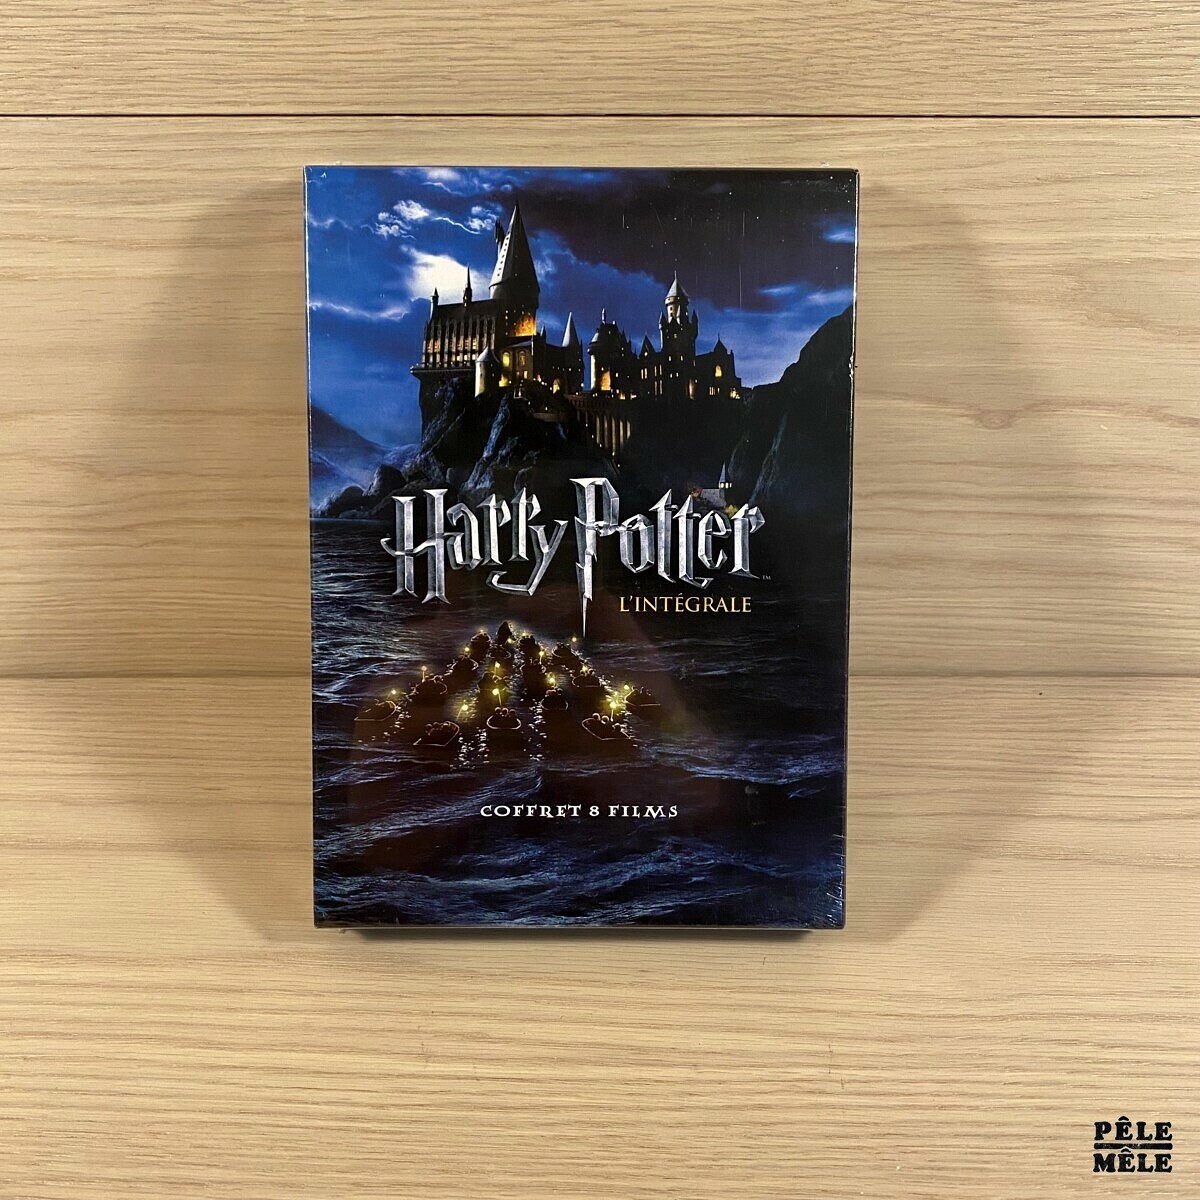 Harry Potter L'intégrale - Coffret 8 films - DVD - Pêle-Mêle Online